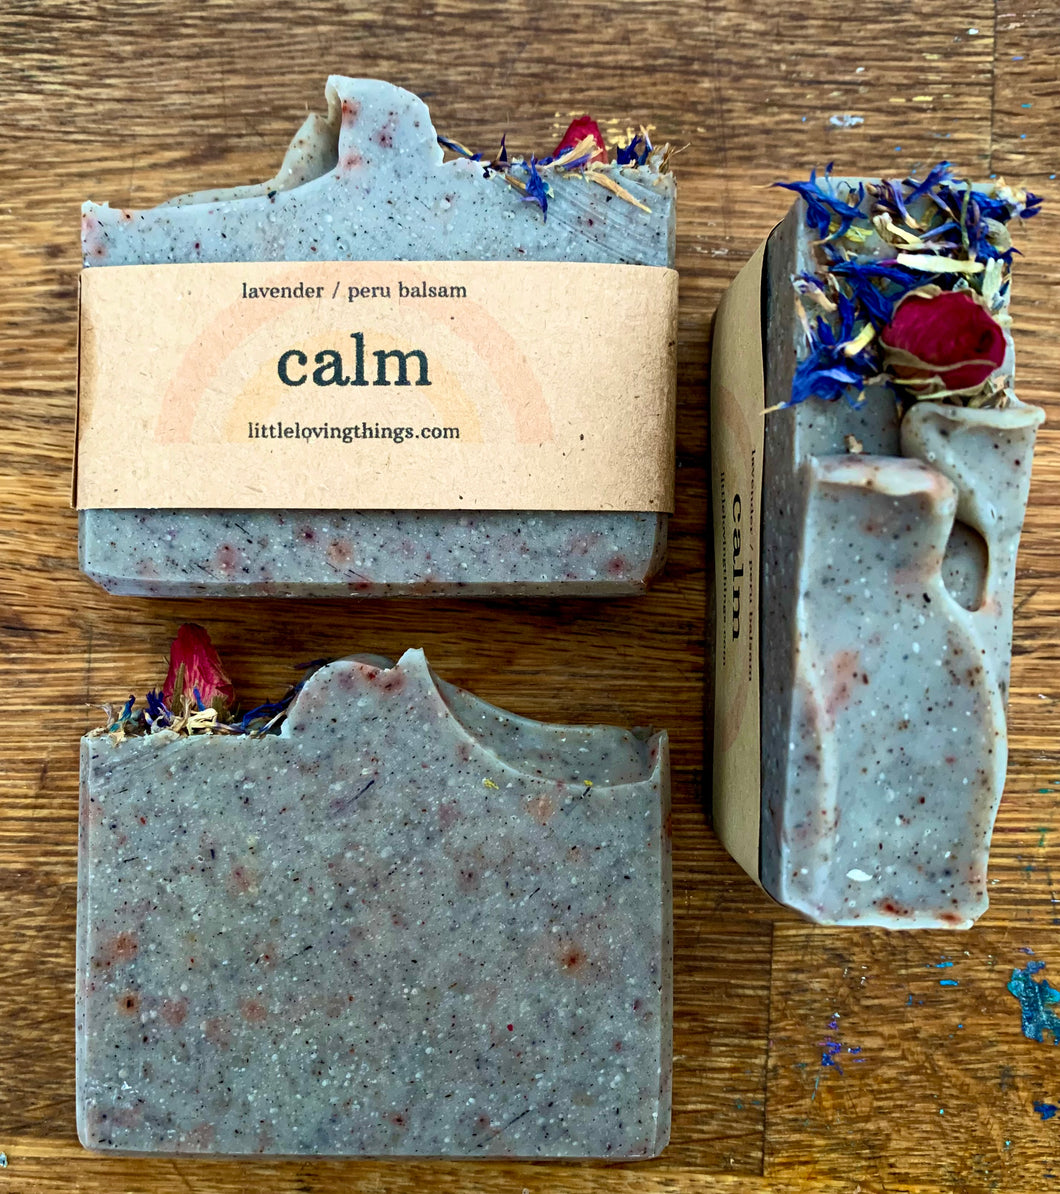 Calm - Lavender & Peru Balsam - Heartmade Artisan Soap